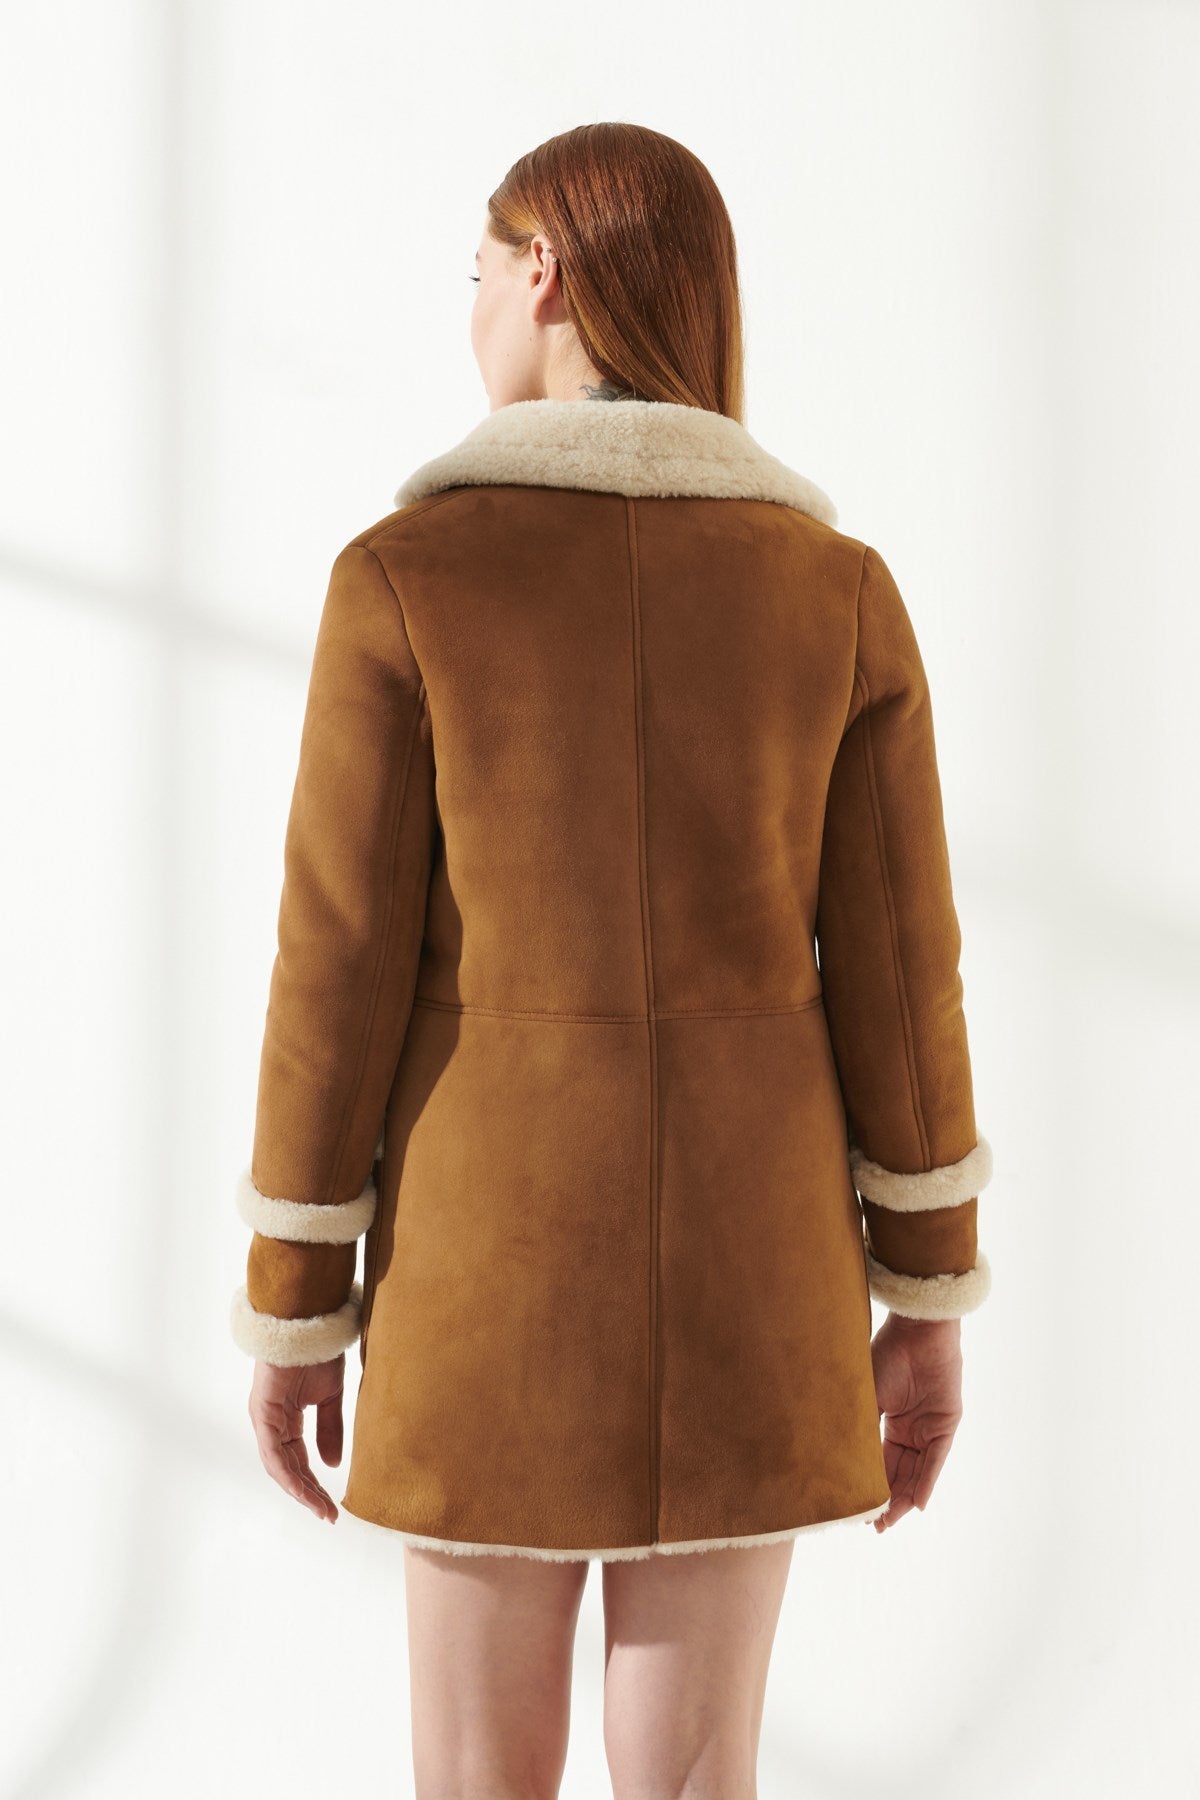 Women's Casual Tan Shearling Leather Coat